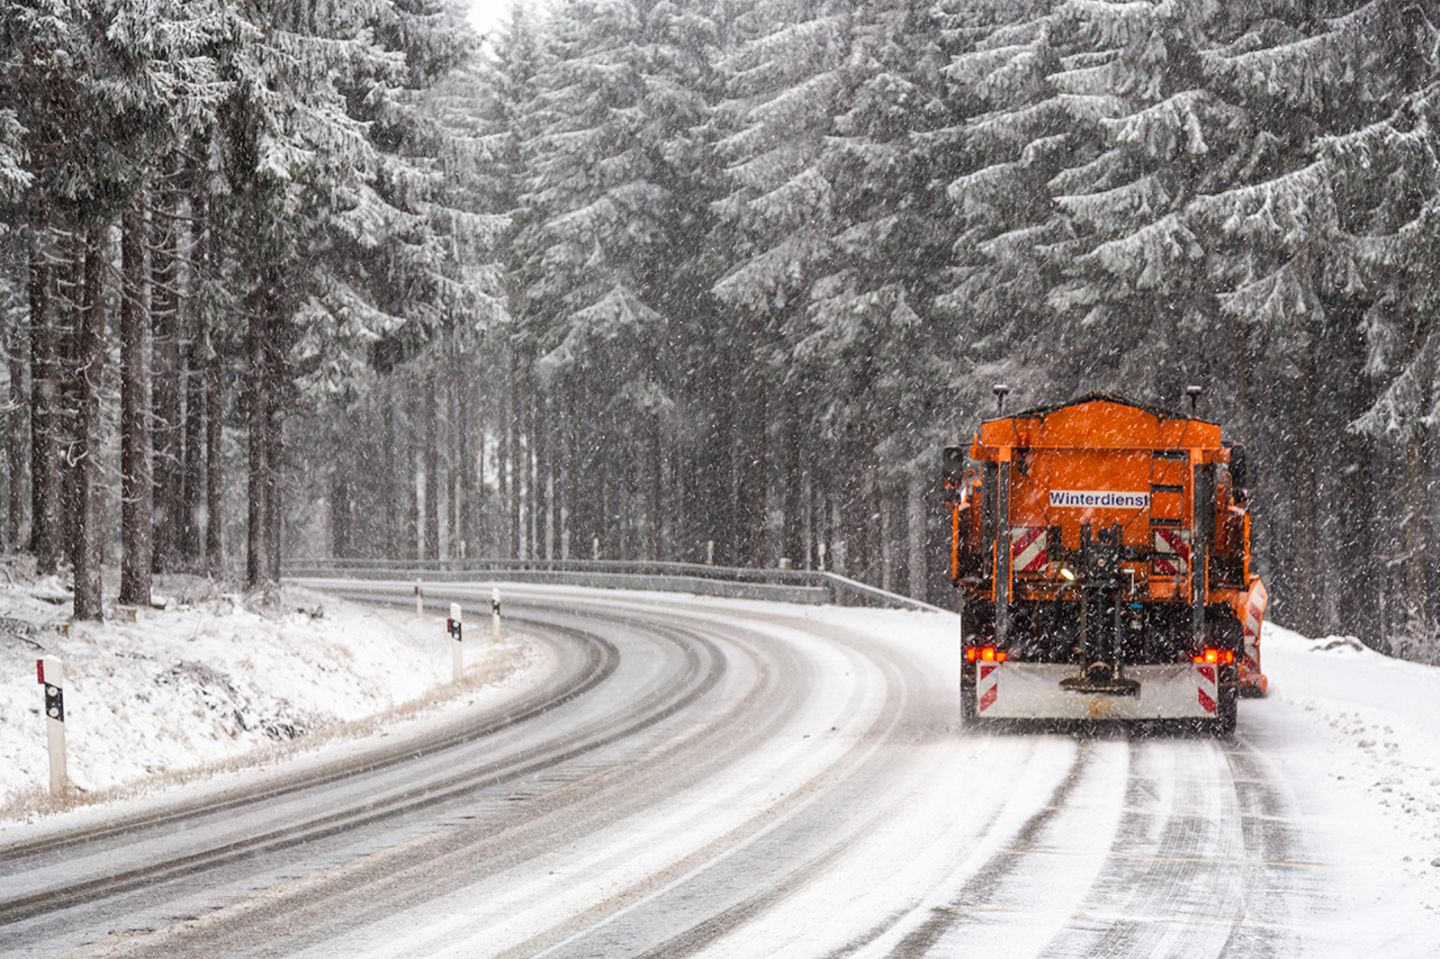 Winterdienst-Fahrzeug auf verschneiter Straße